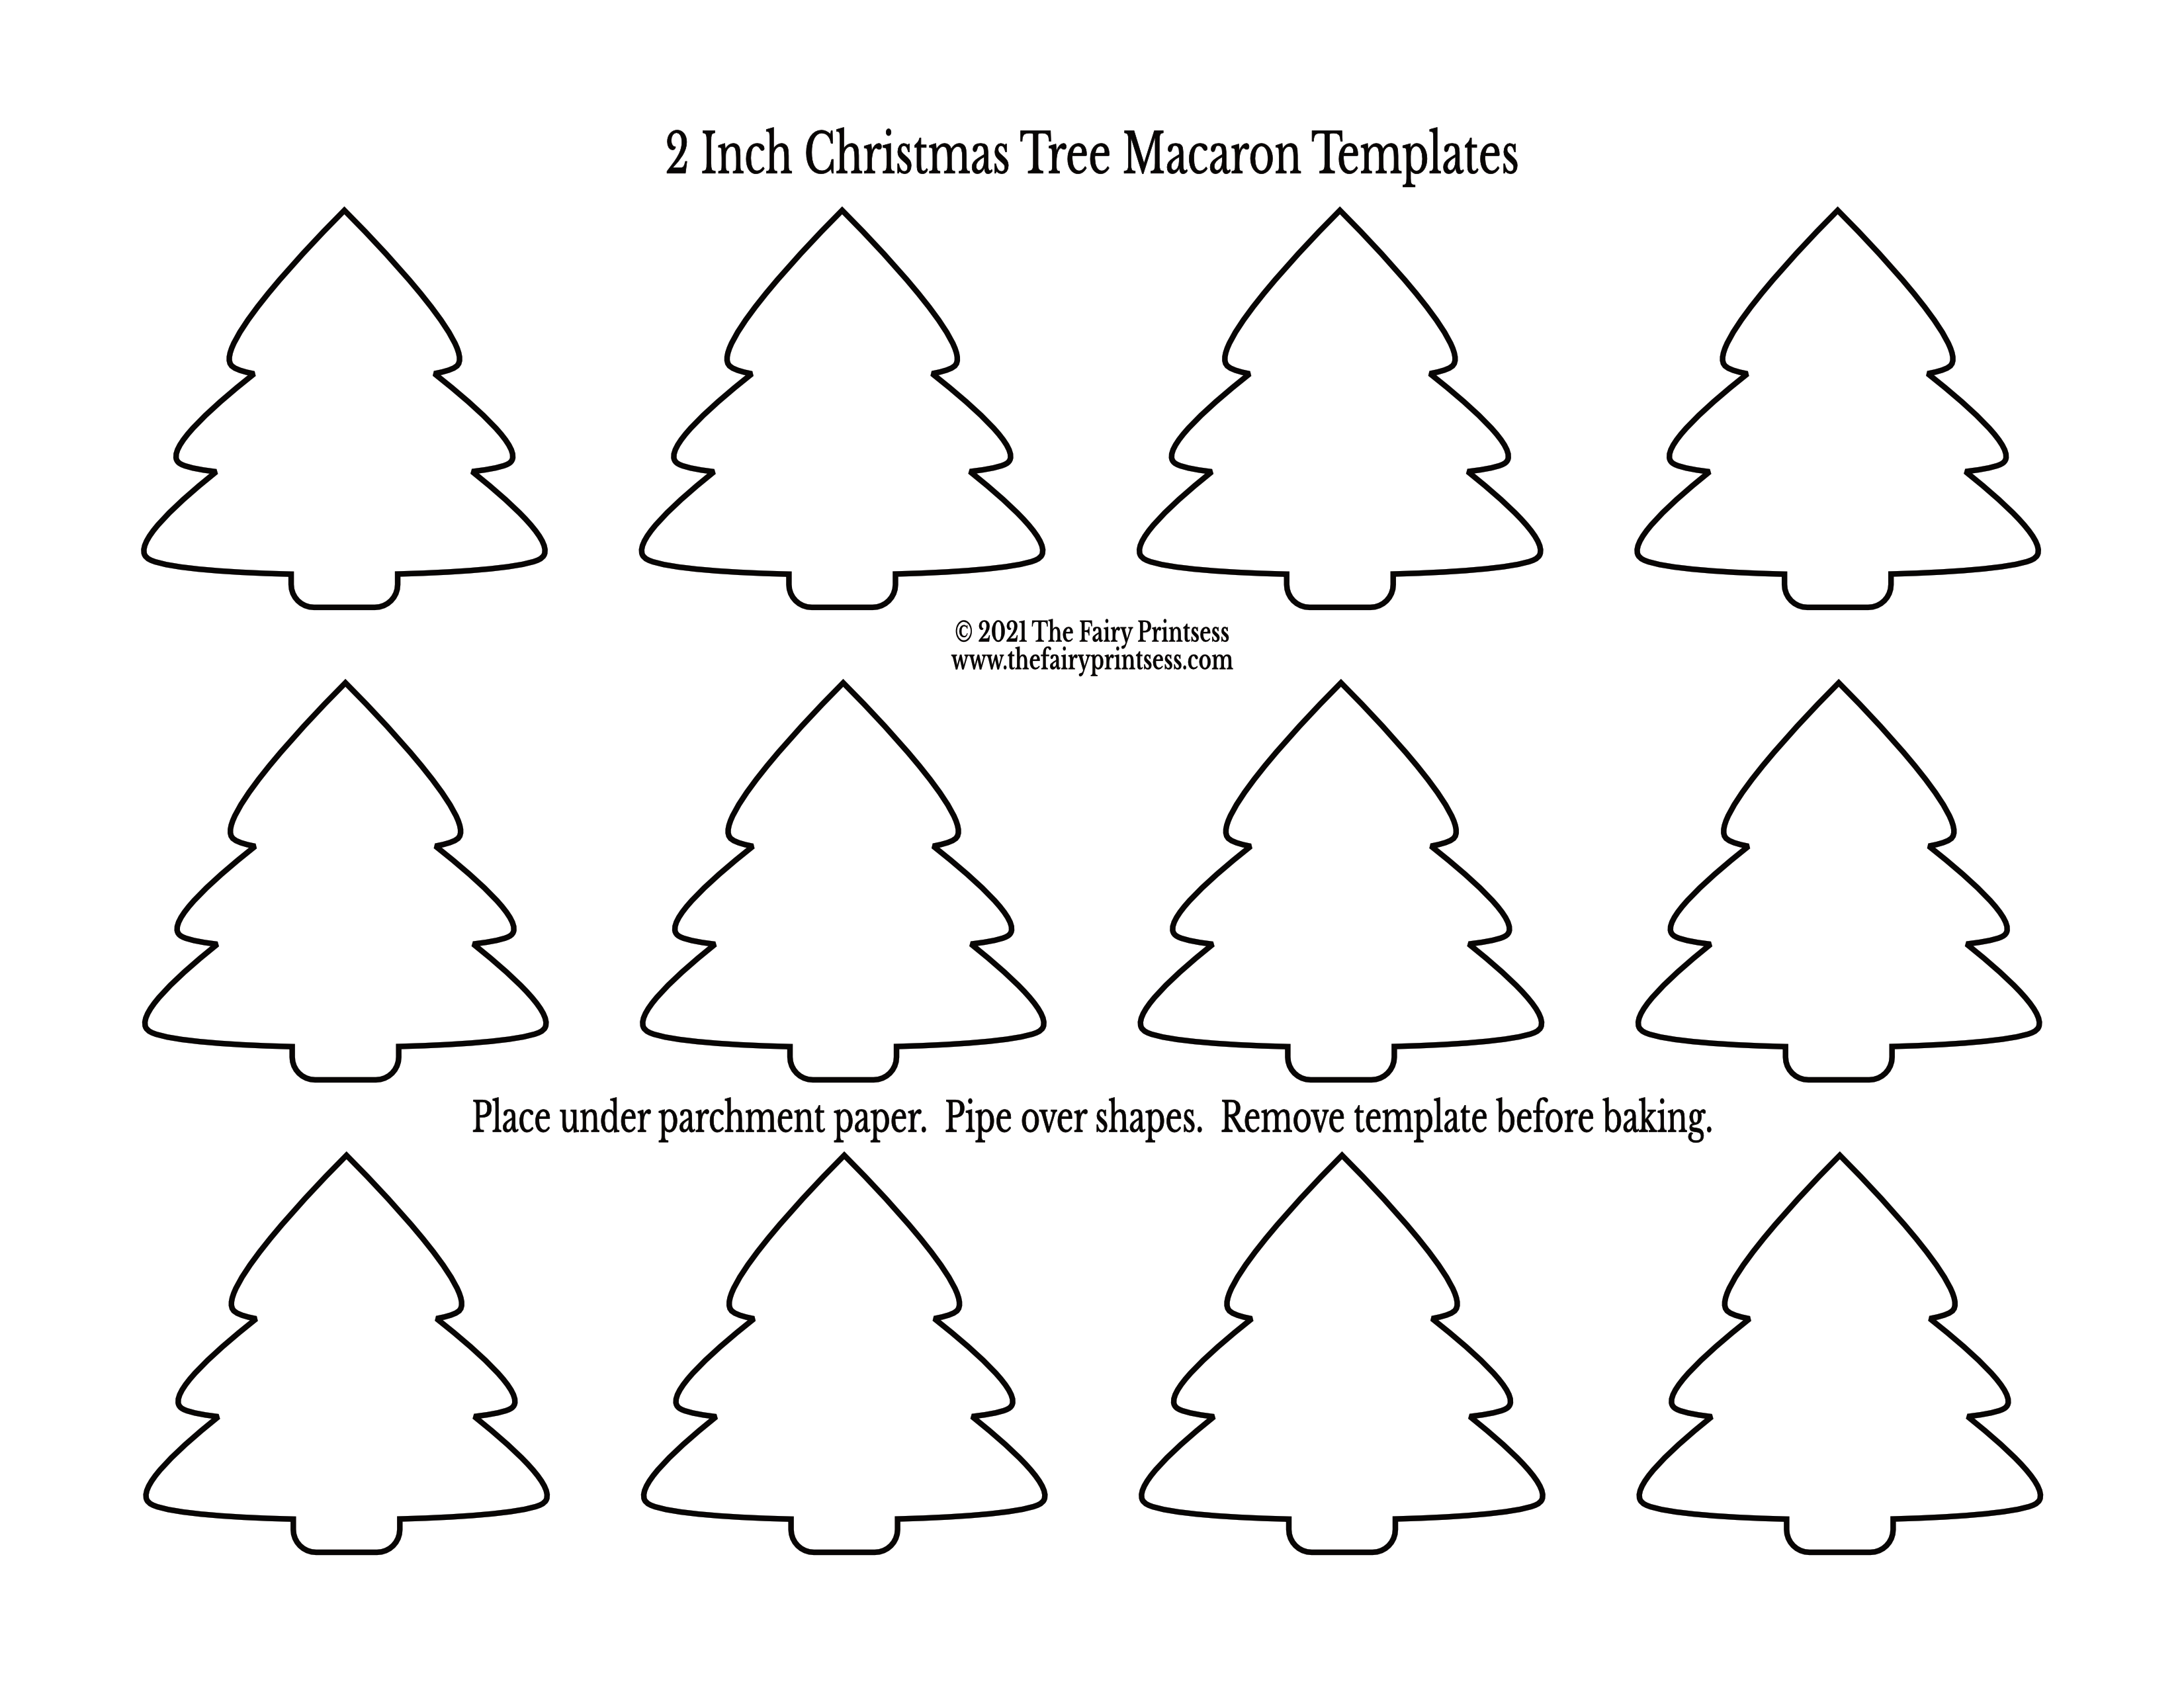 Christmas Macaron Templates Free Printables For Holiday Baking!